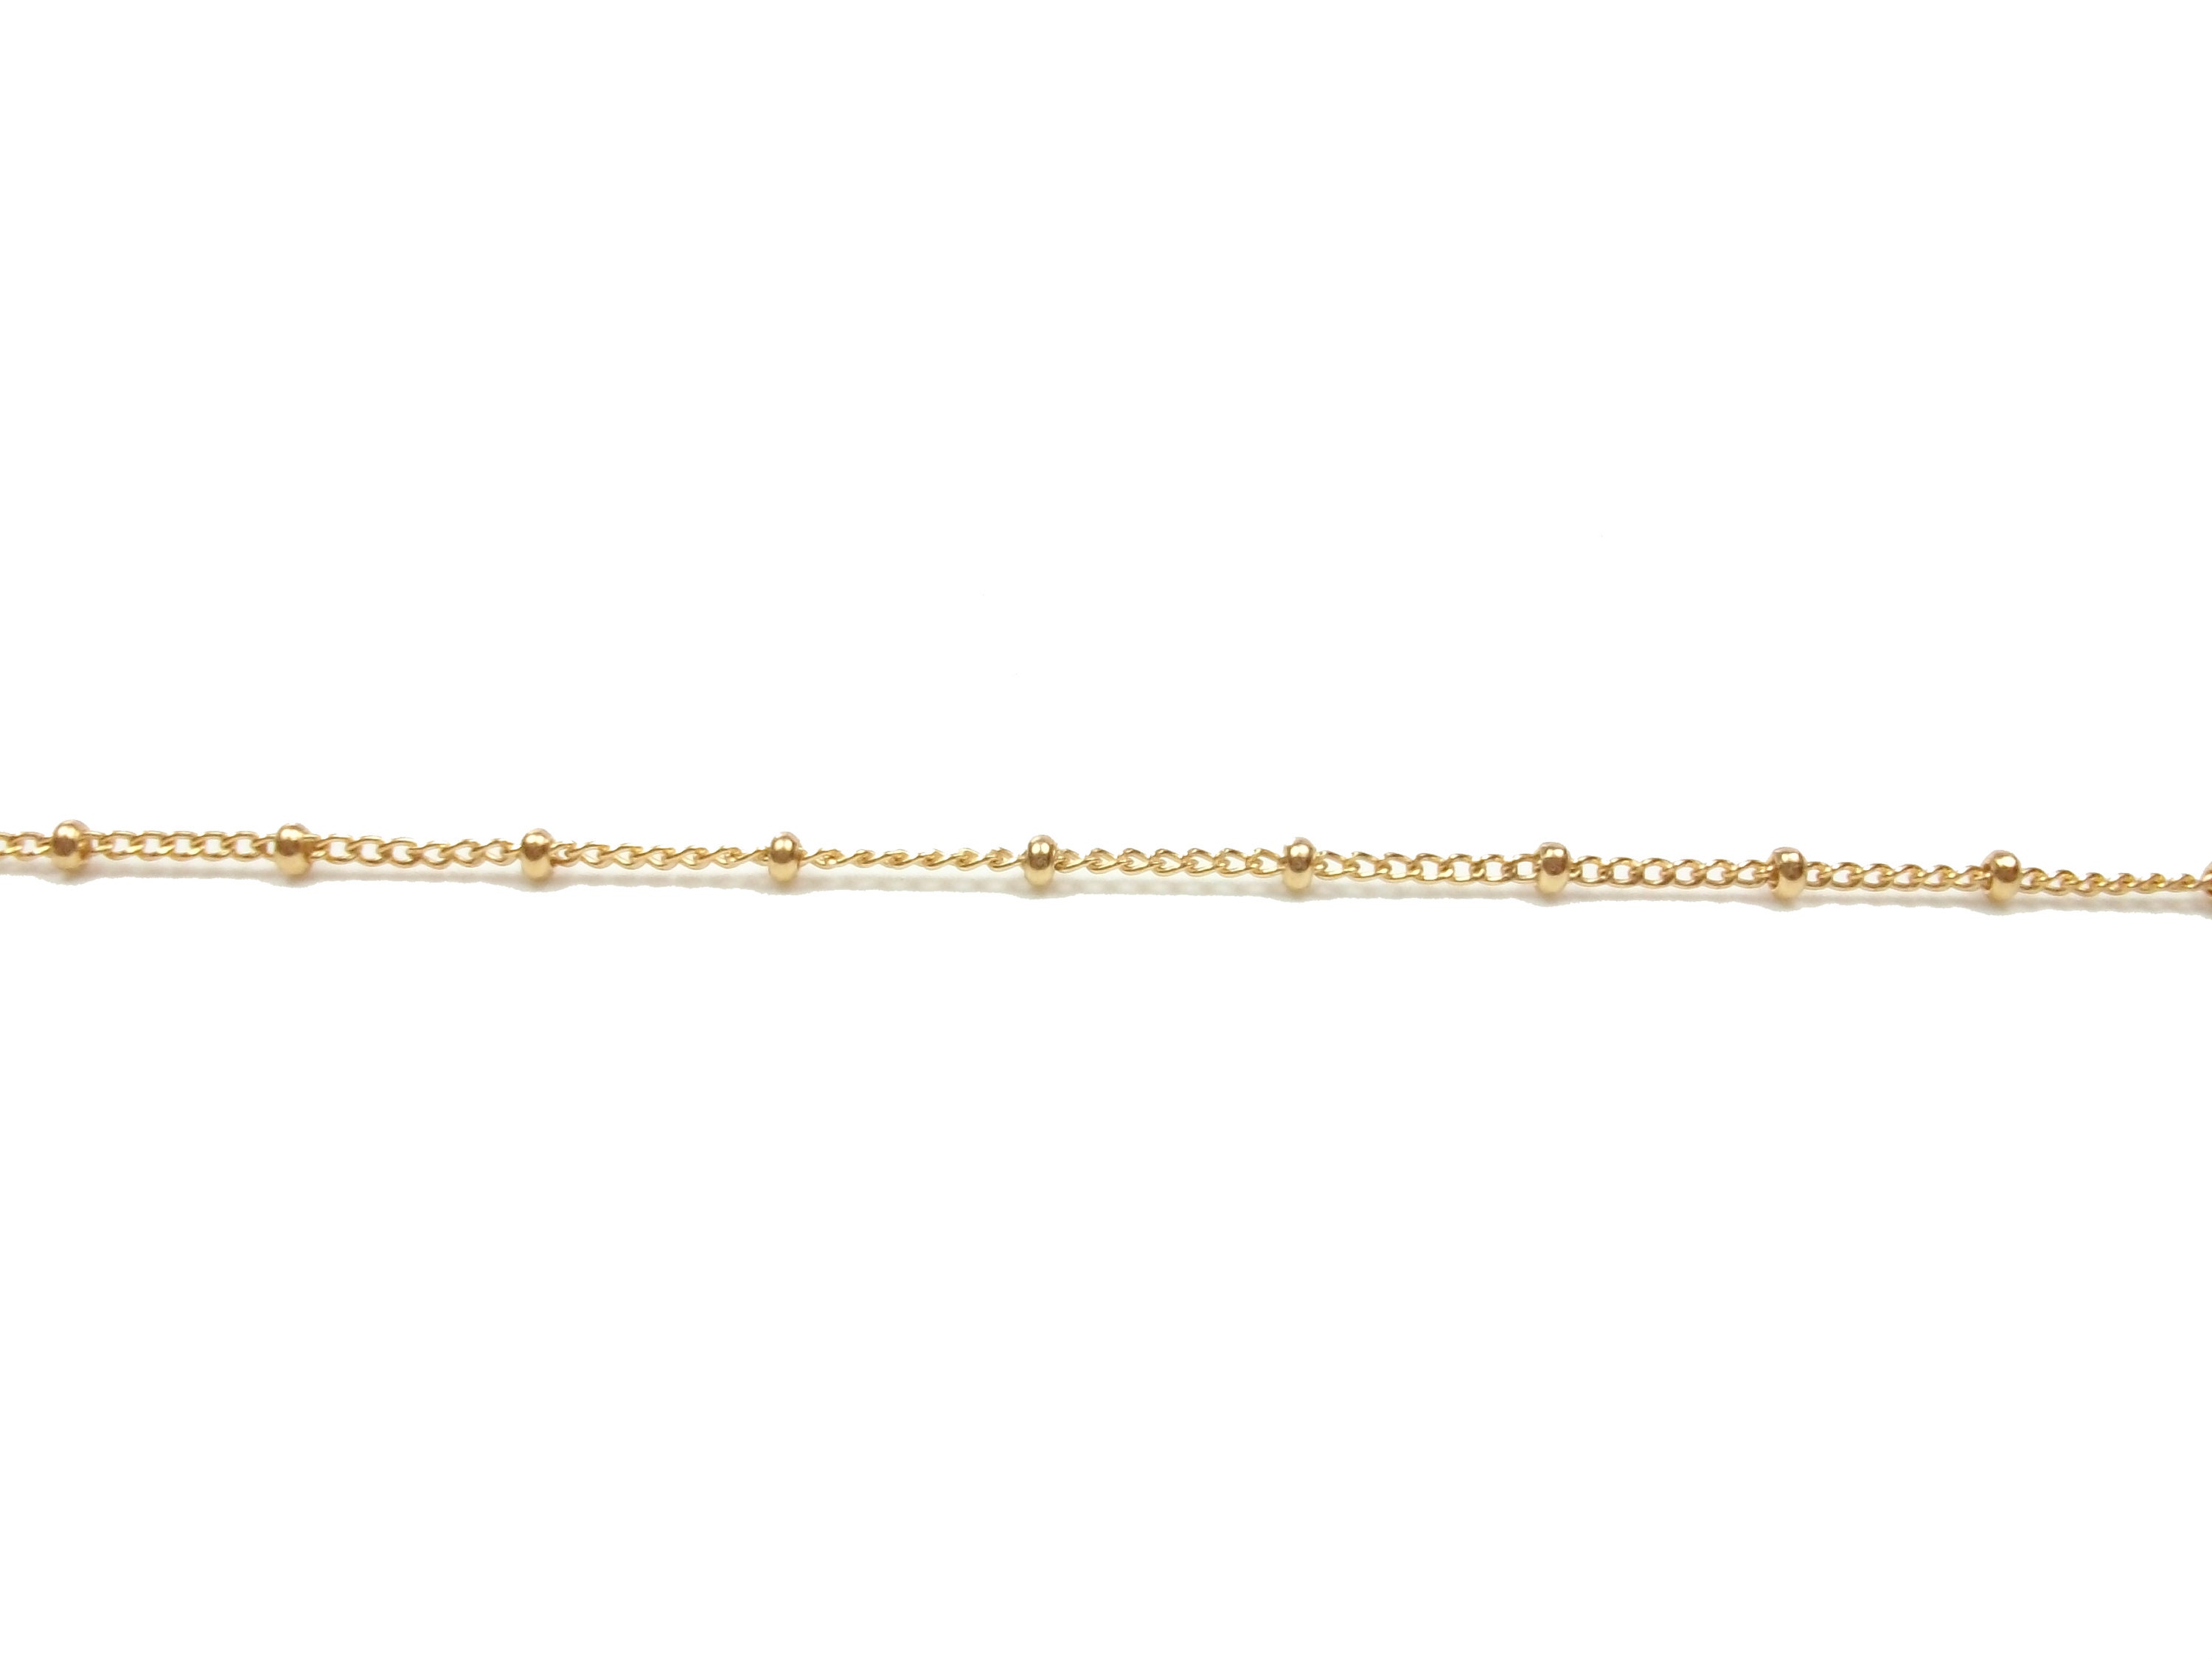 Jadau Bangles | 22k Gold Jewelry with Precious Gemstones